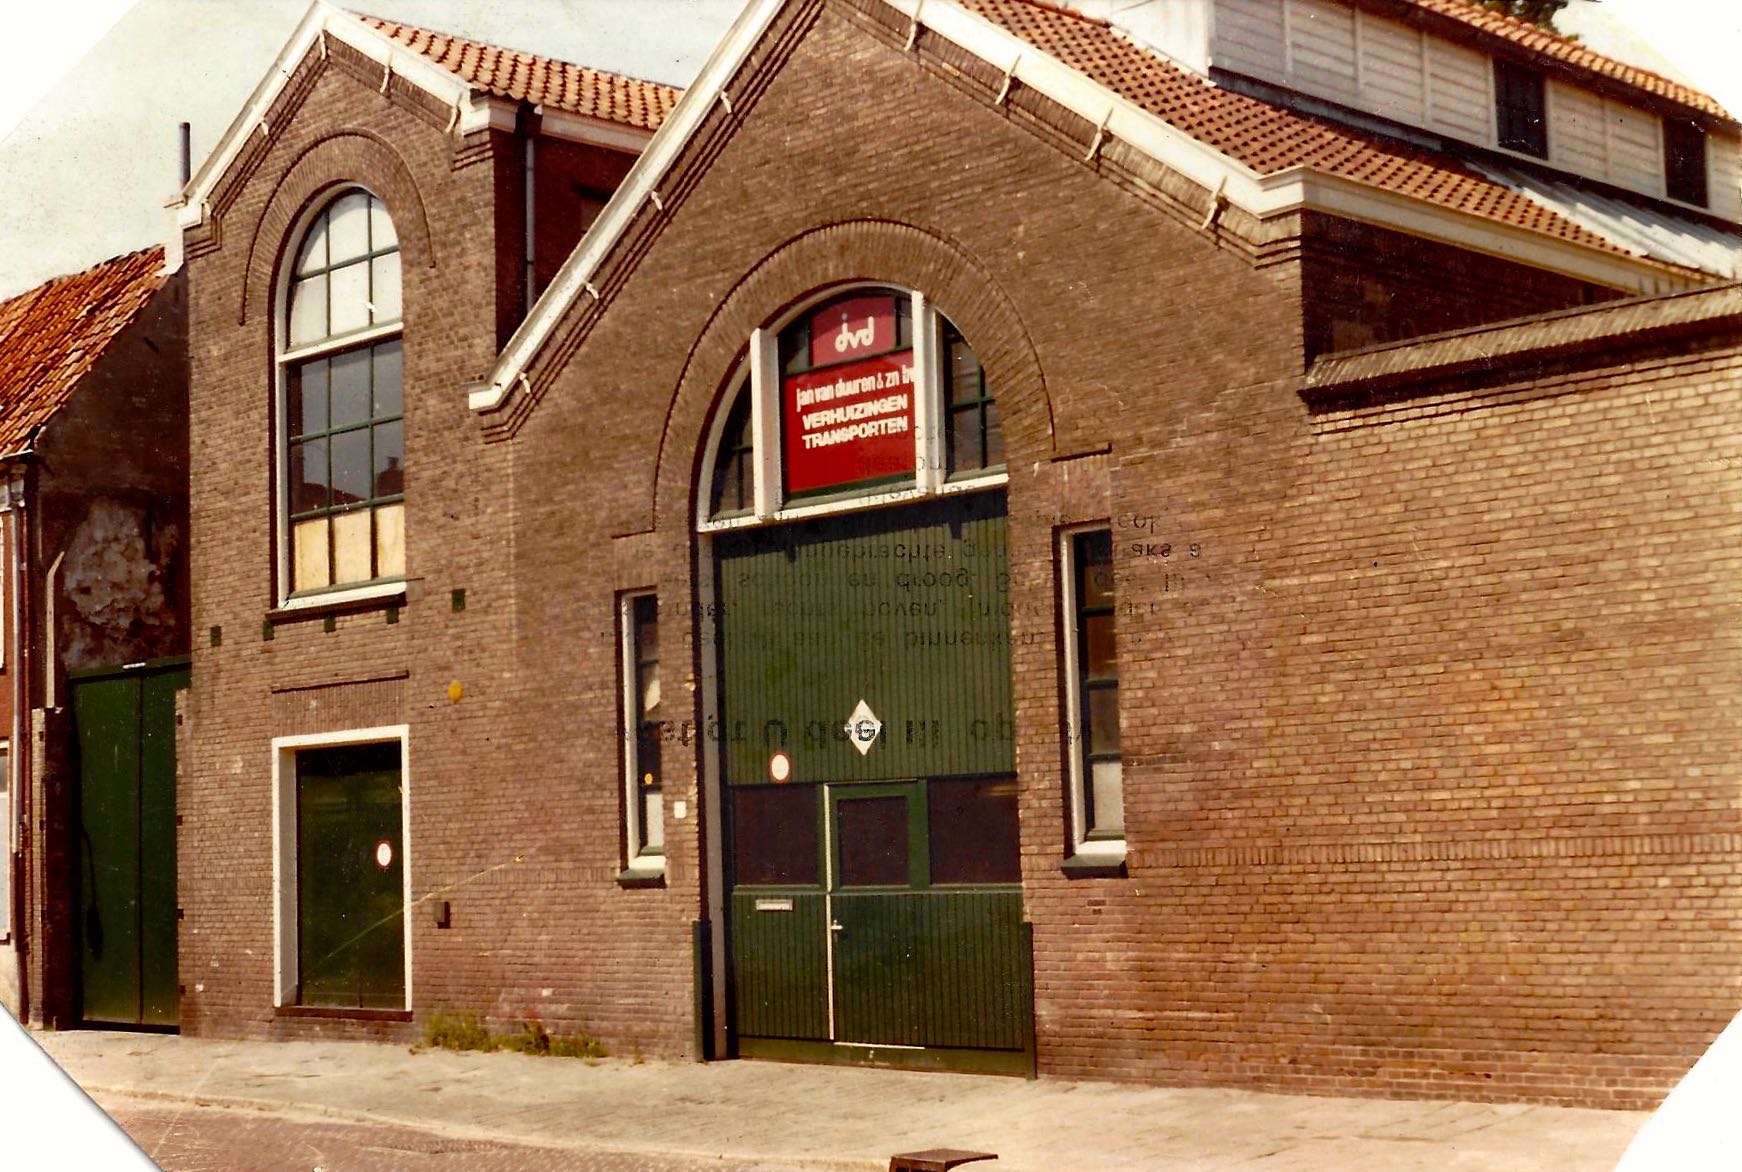 Middelstegracht 36, Leiden, Nederland, Dit is waar het allemaal begon / This is where it all started